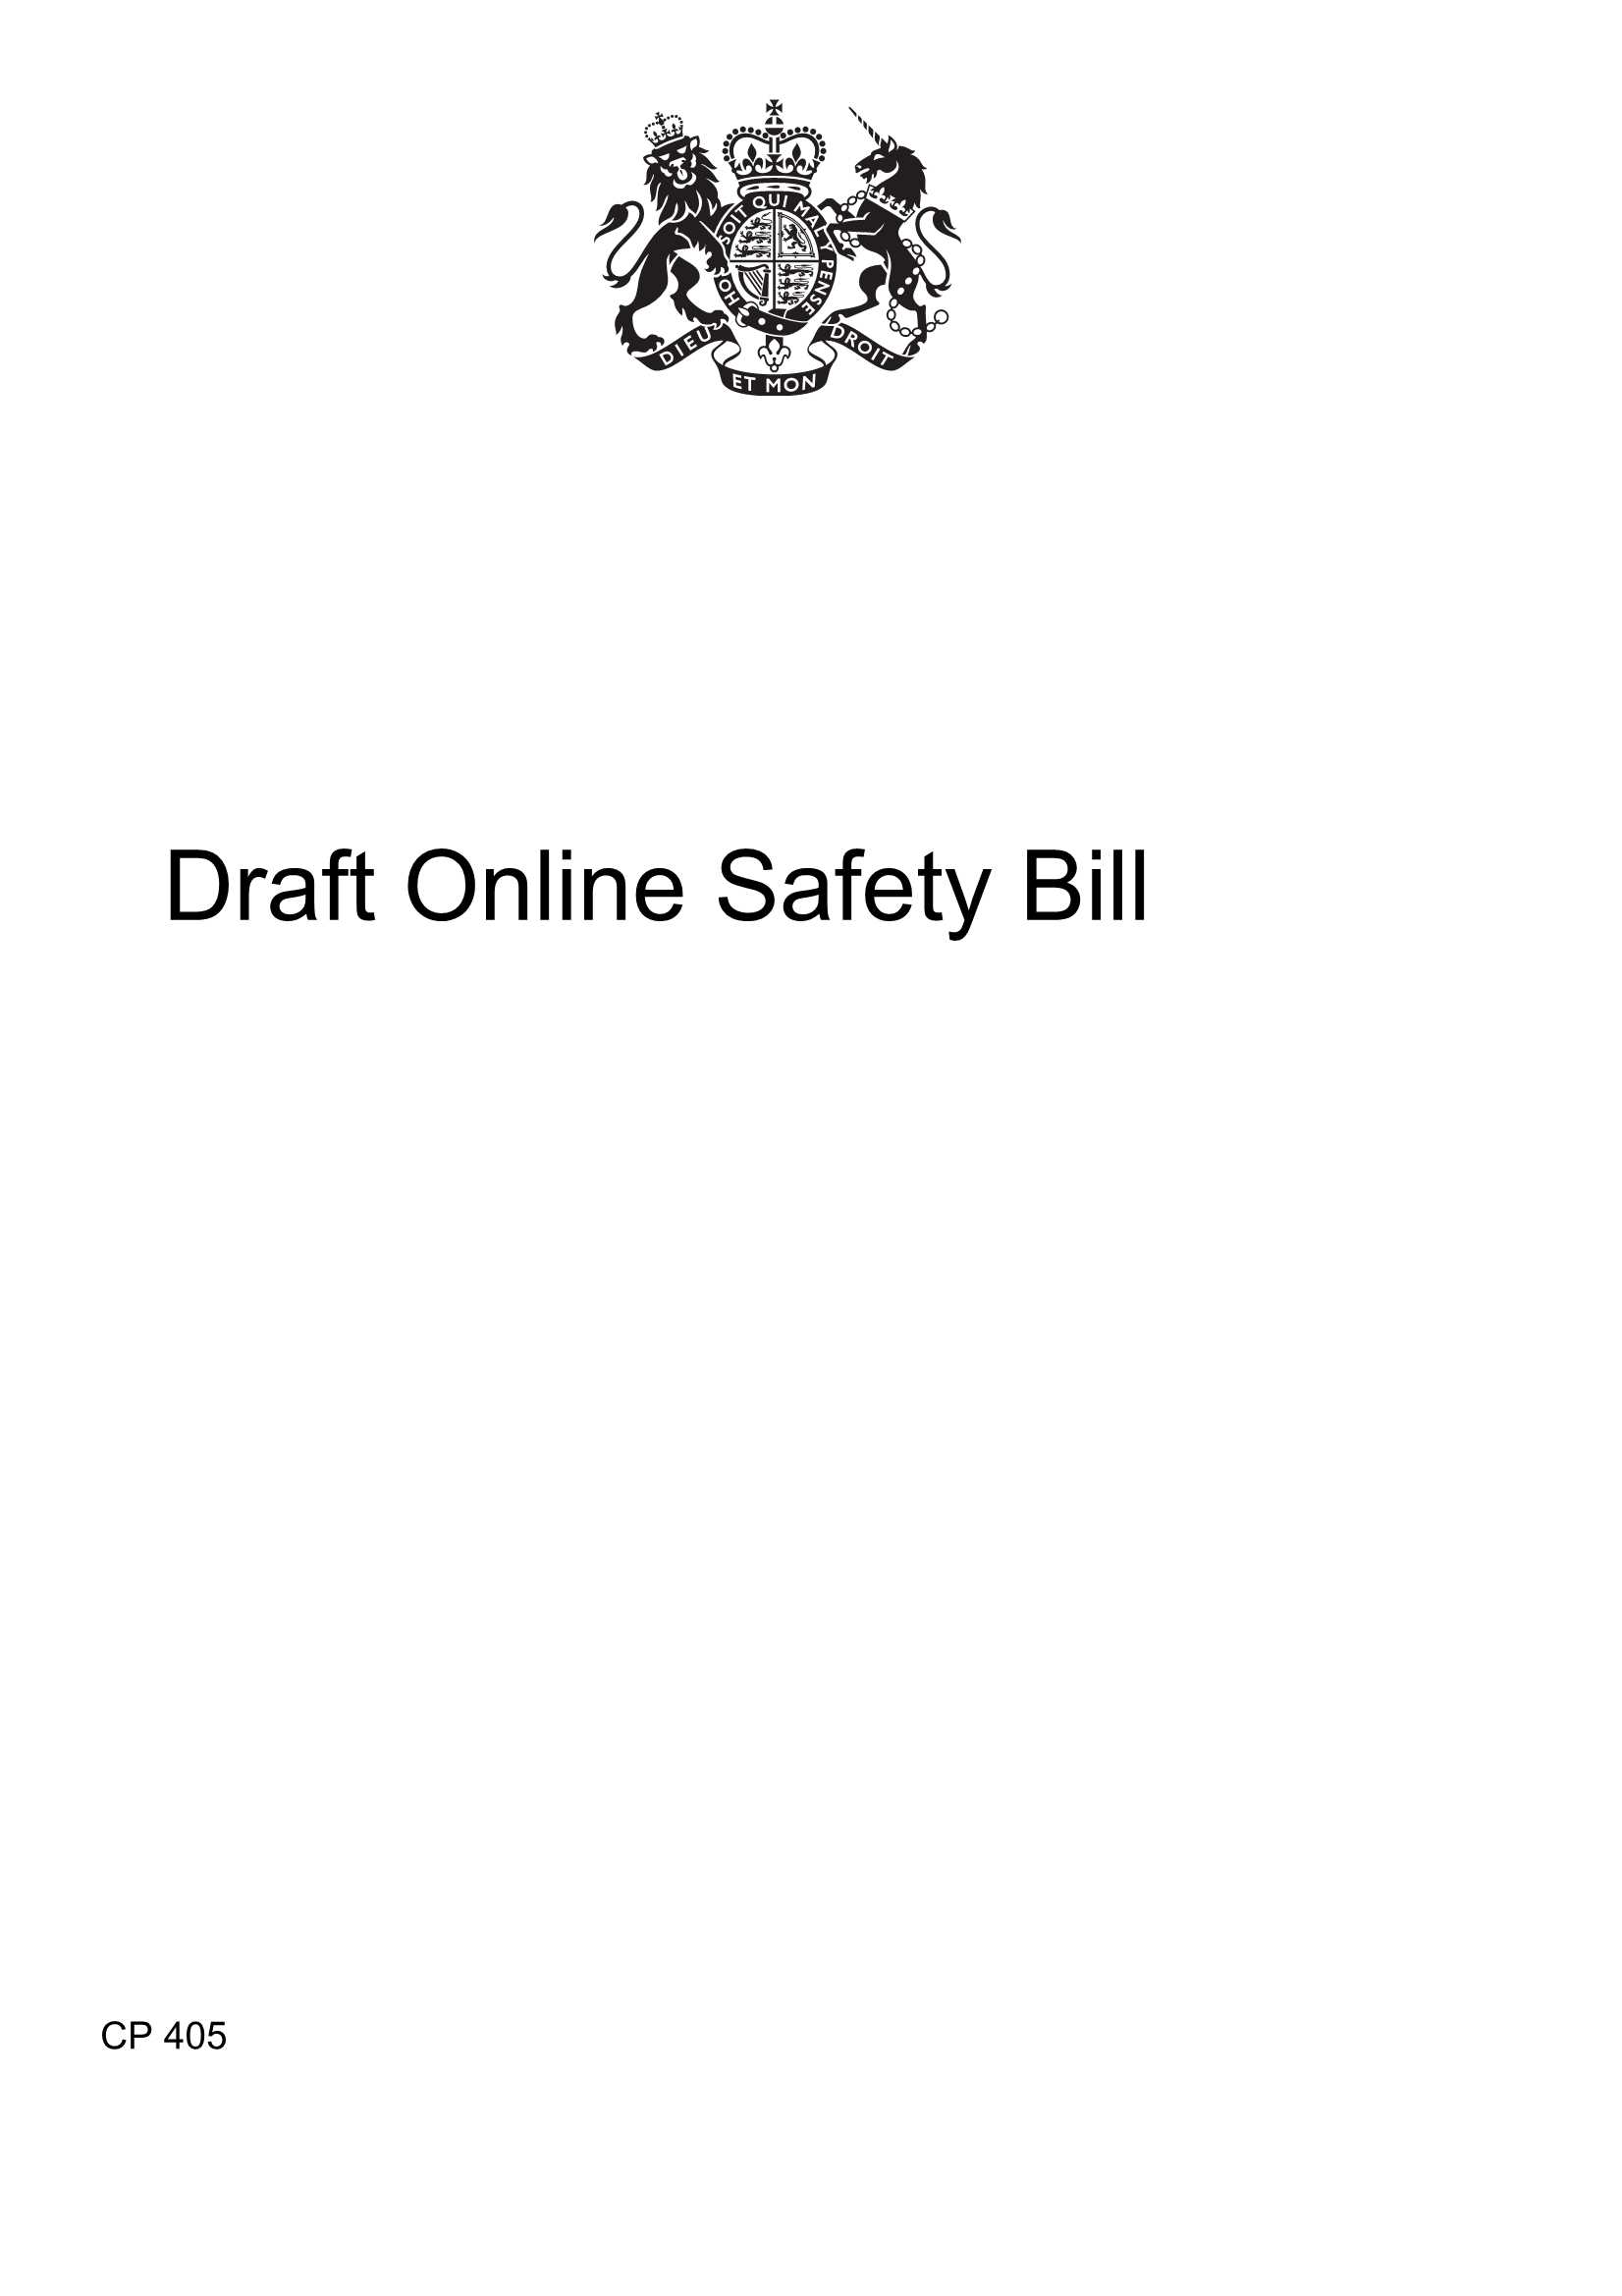 OGL-英国在线安全法案草案（英文）-2021.05-145页